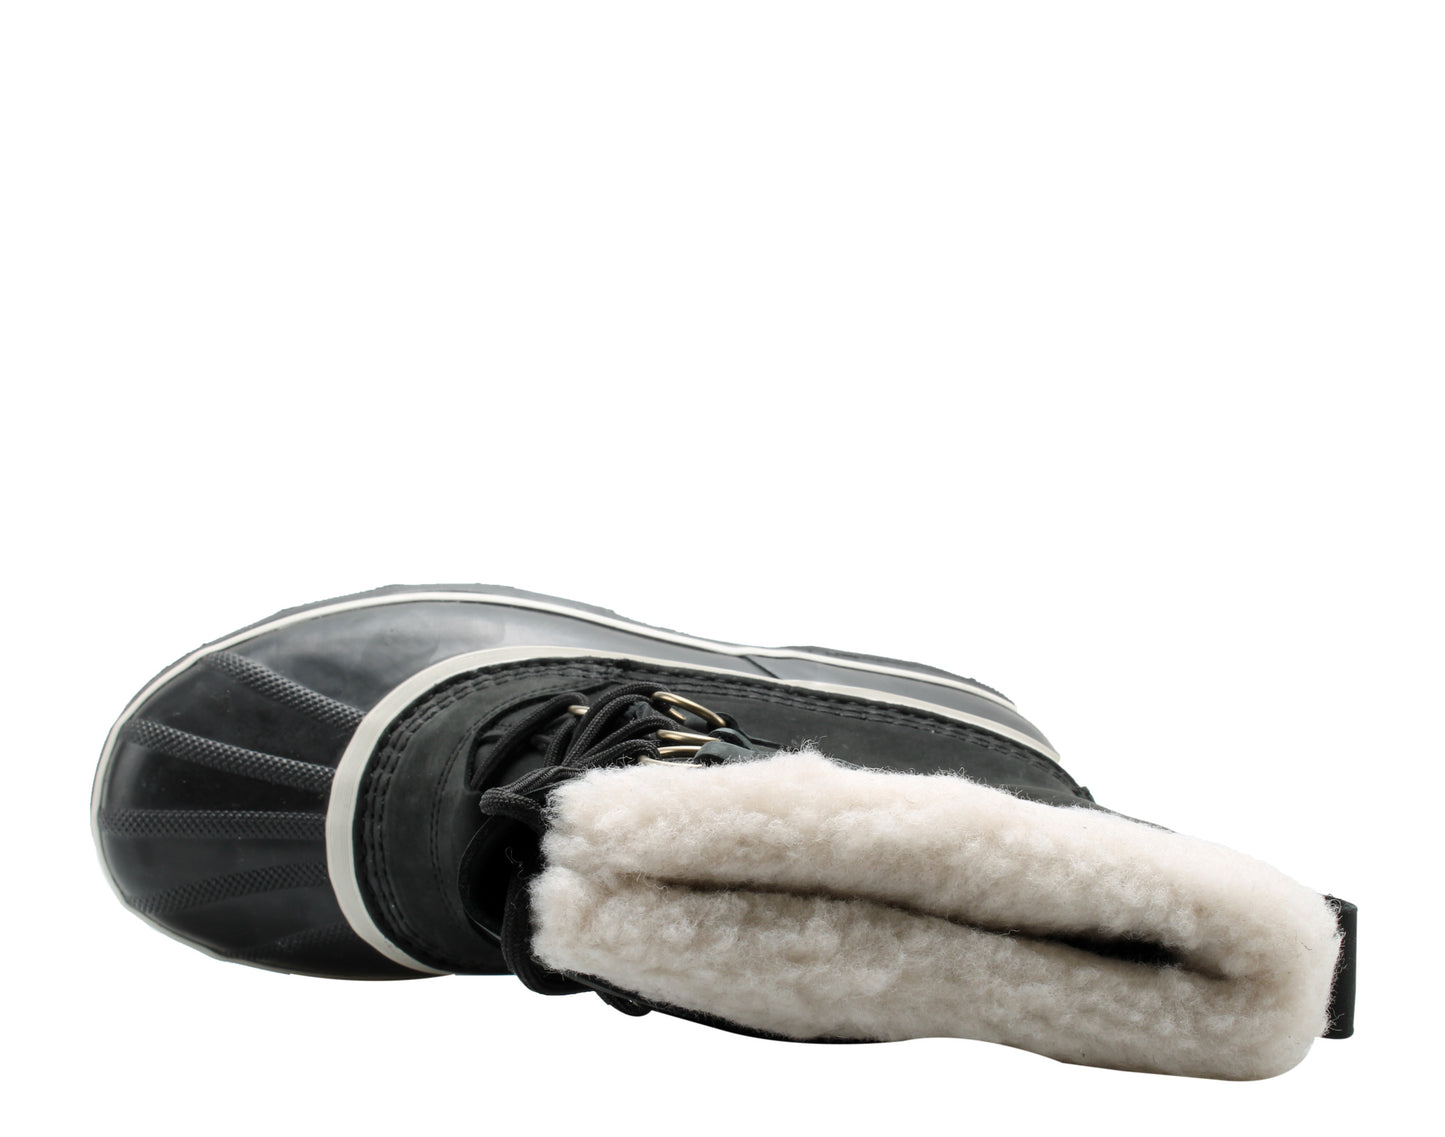 Sorel Caribou Black/Stone Women's Waterproof Winter Snow Boots 1003812-011